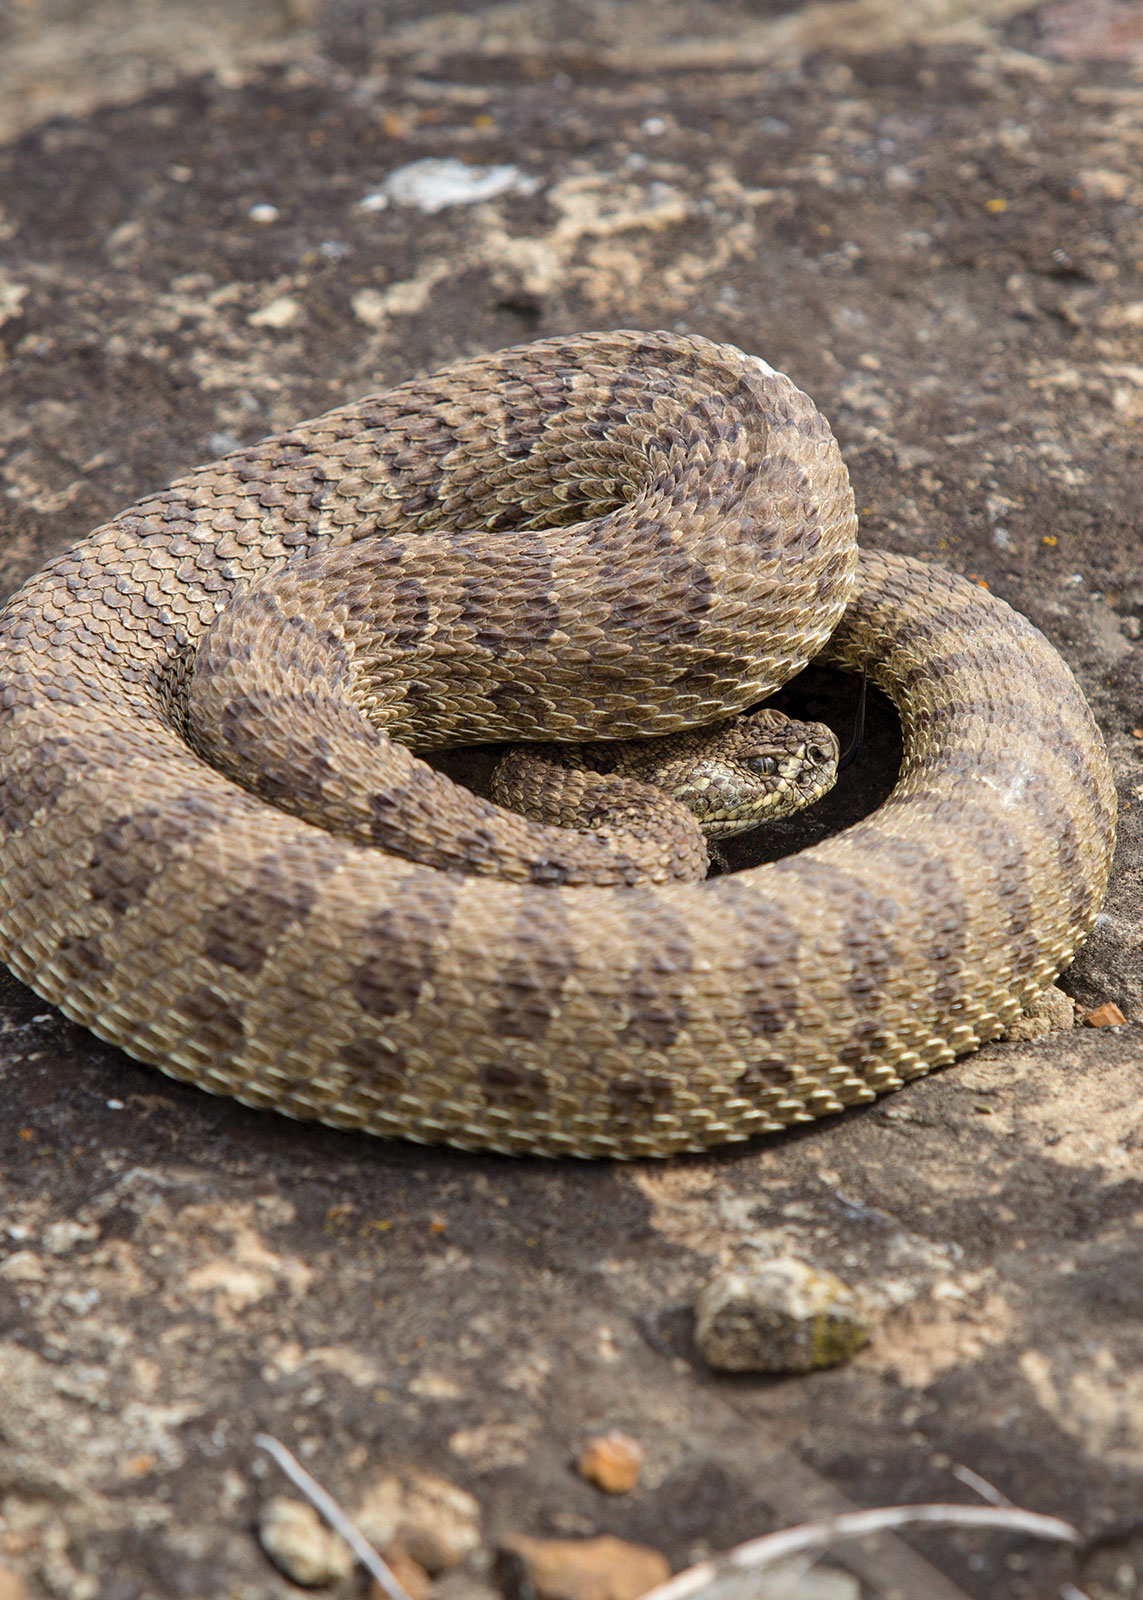 Coiled rattlesnake near den east of the Missouri River